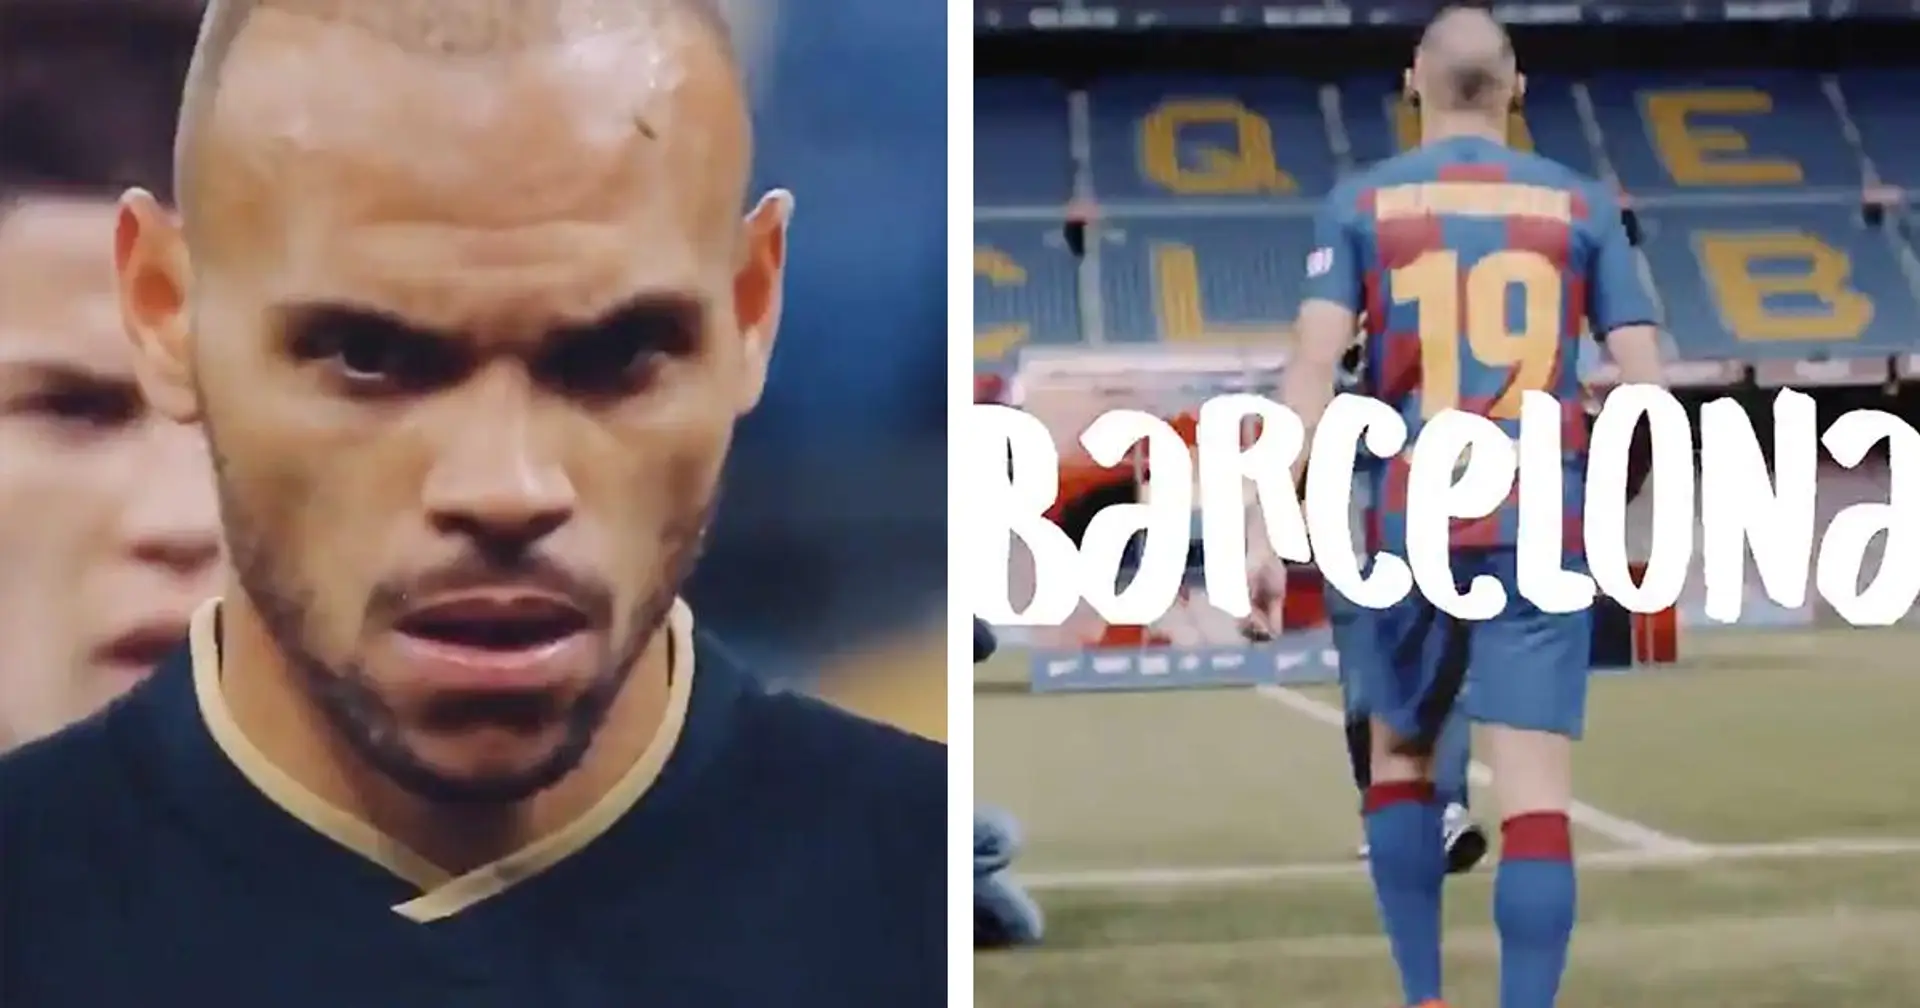 "Déjà un an dans ce club incroyable'': Martin Braithwaite publie une vidéo chaleureuse sur son parcours au Barça (vidéo)